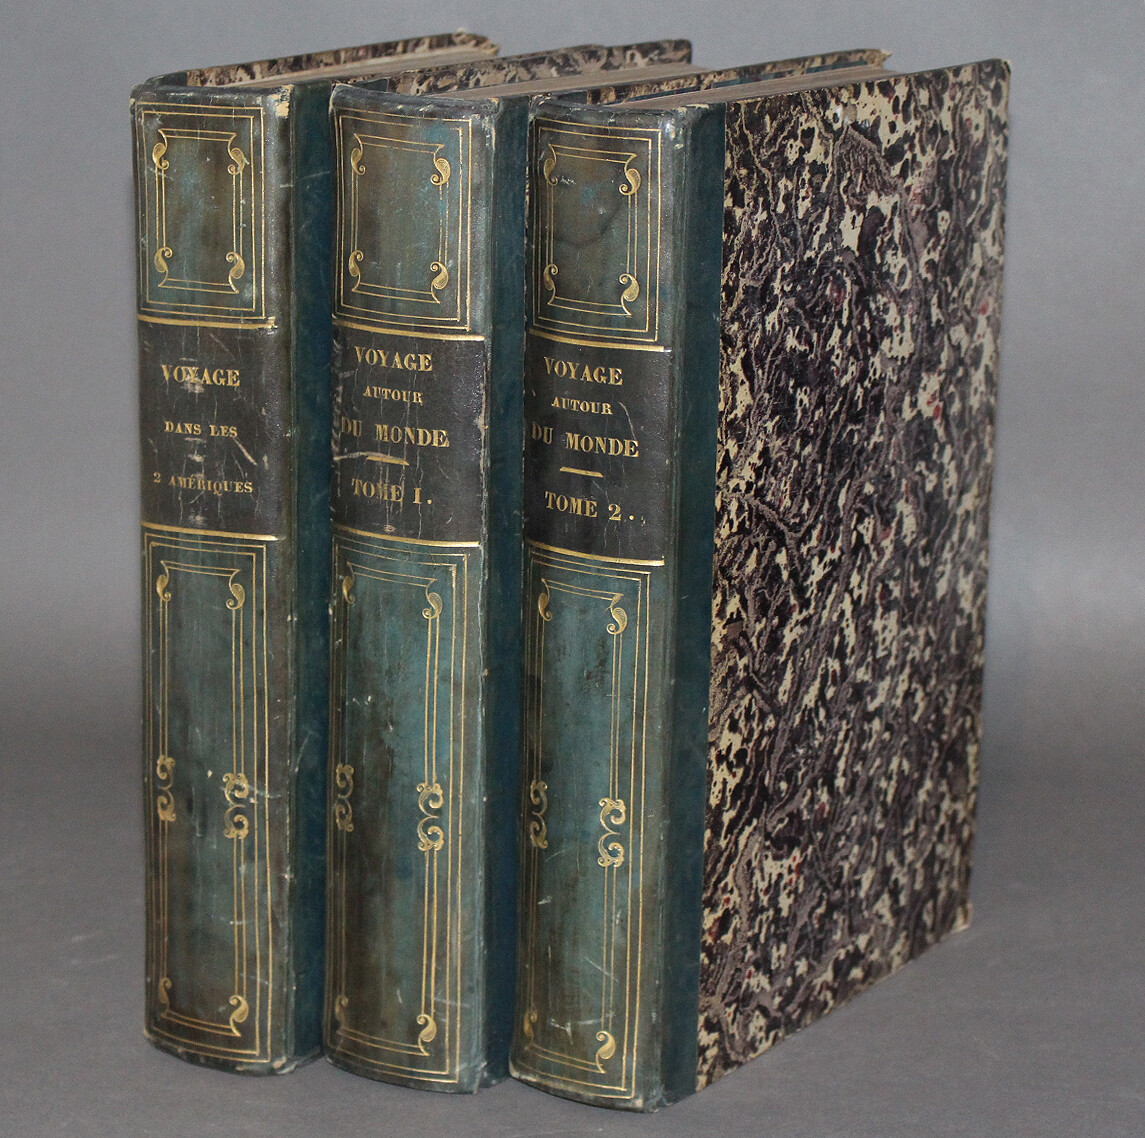 DUMONT d'URVILLE & ORBIGNY.- Voyage pittoresque autour du monde & Voyage pittoresque dans les deux Amériques, 1834-1835, 1836.